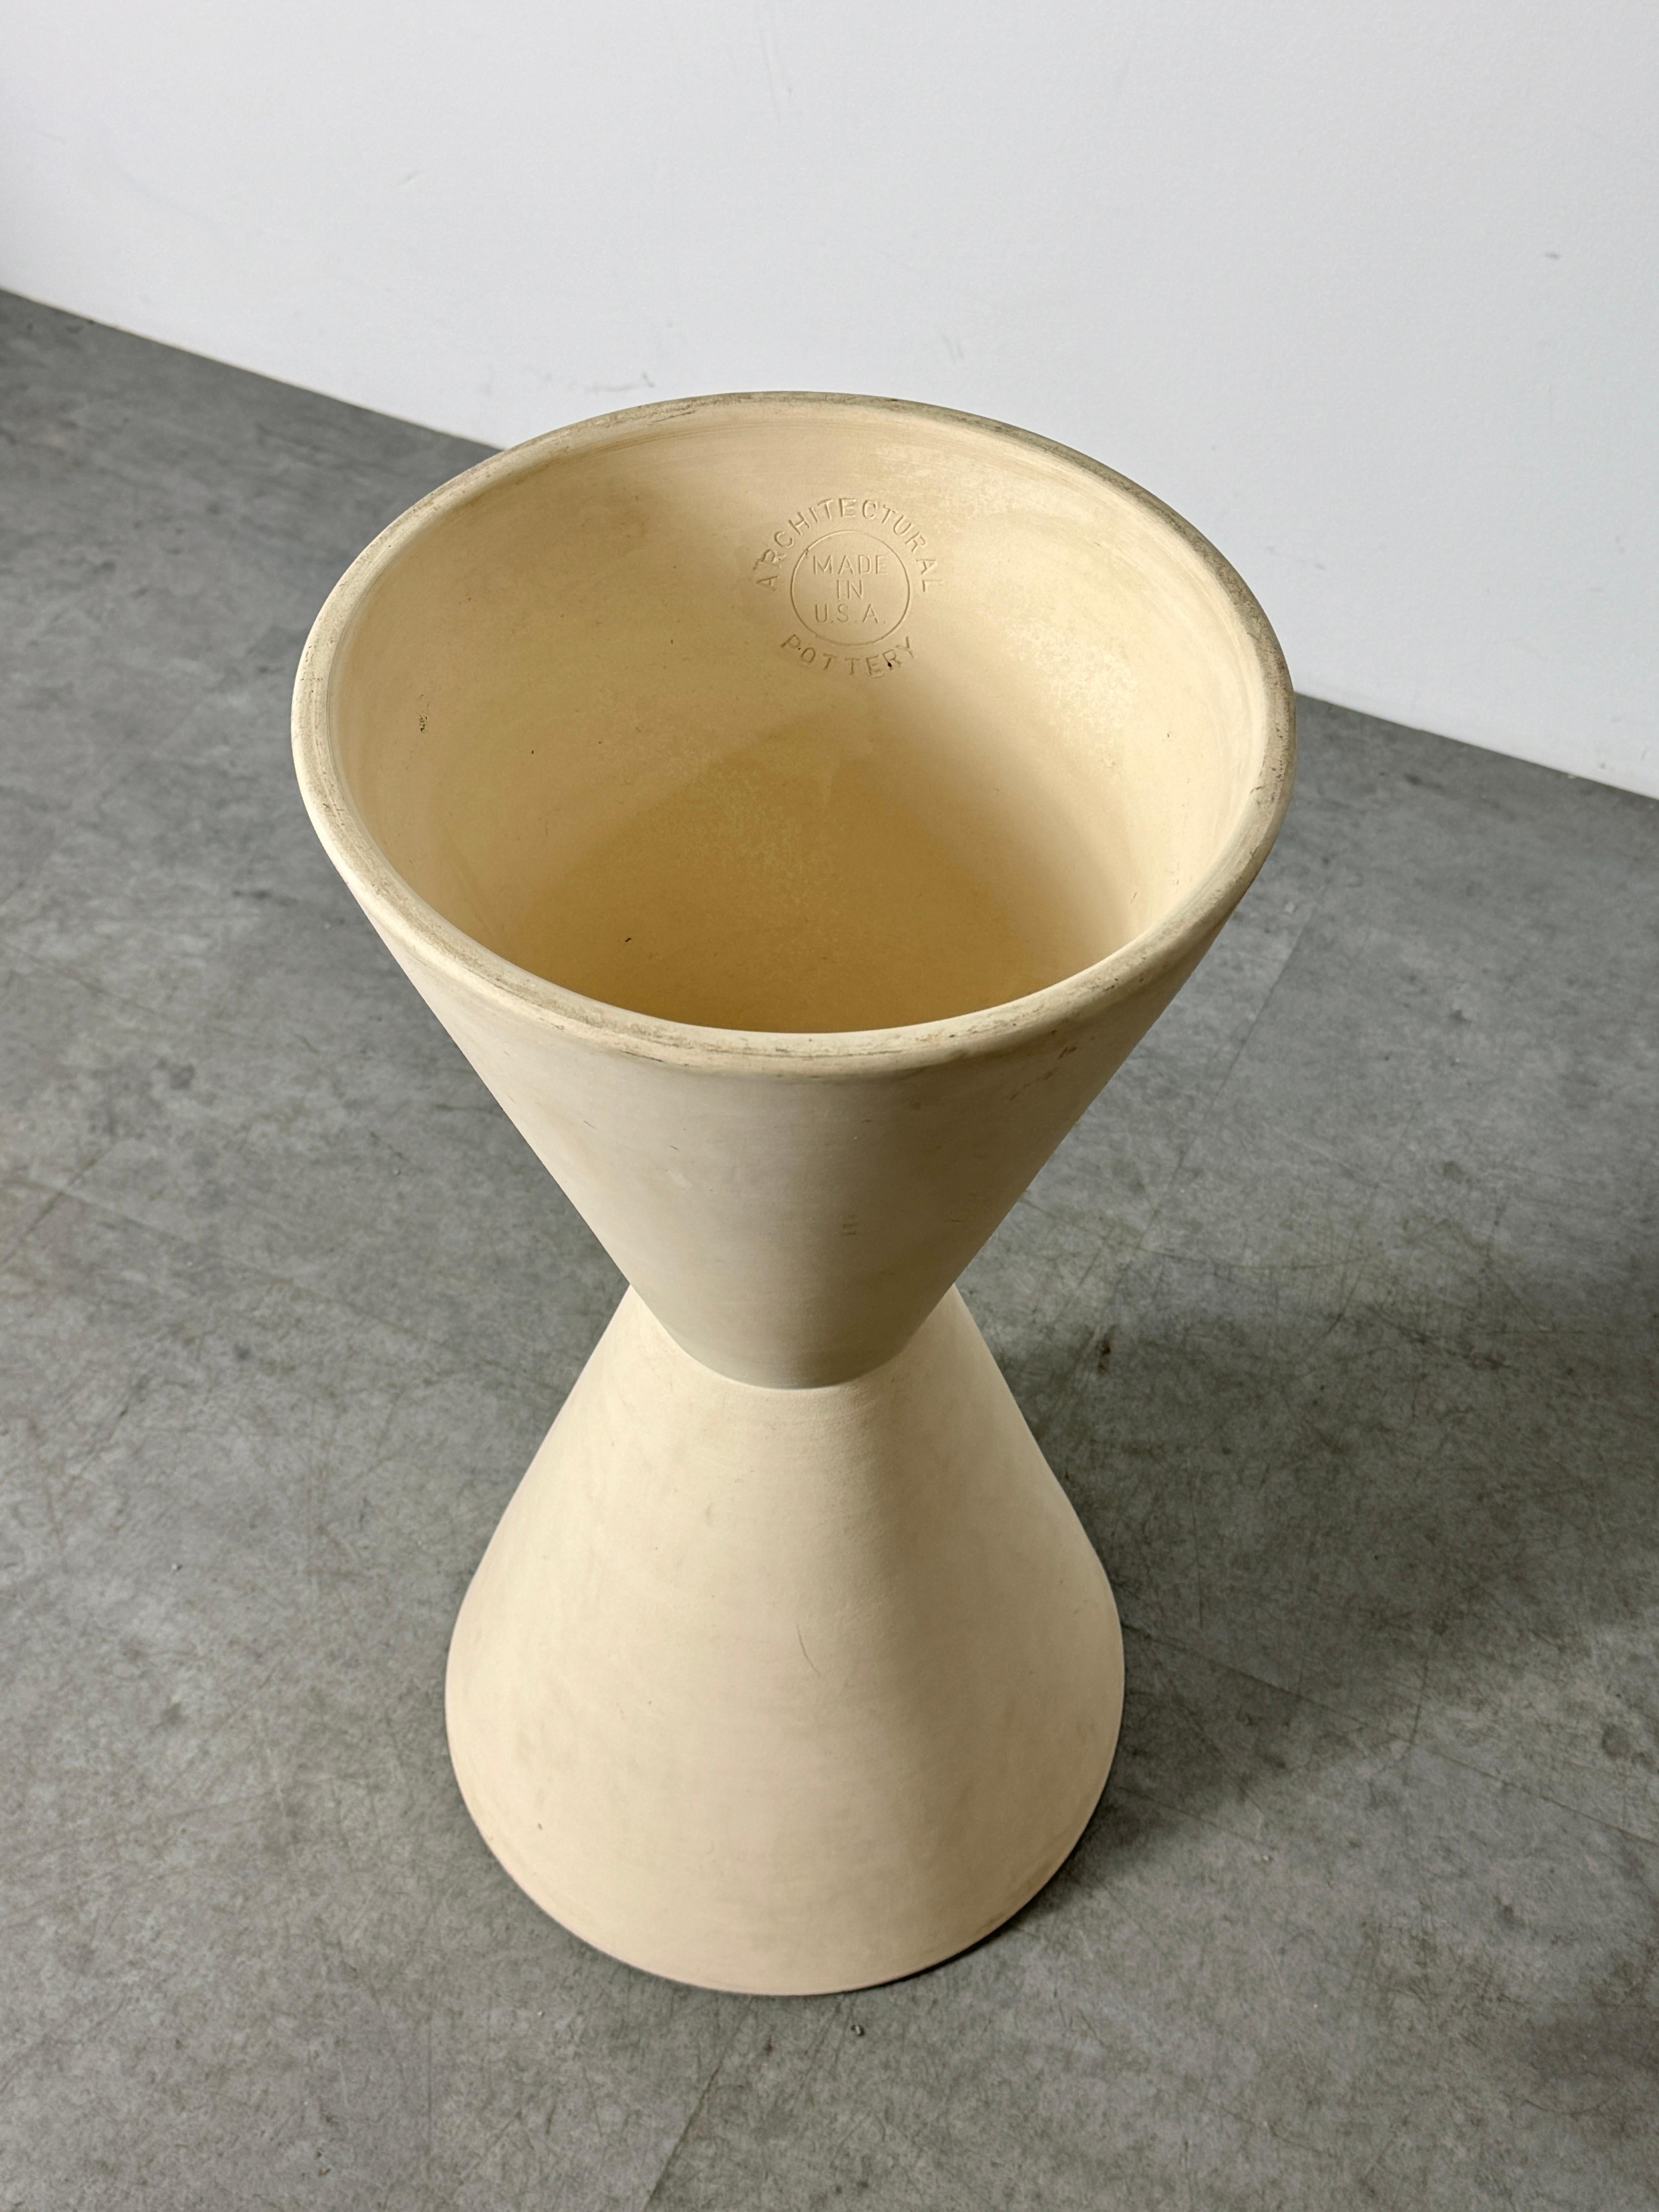 Lagardo Tackett Architectural Pottery Double Cone Planter Bisque Ceramic 1950s For Sale 2